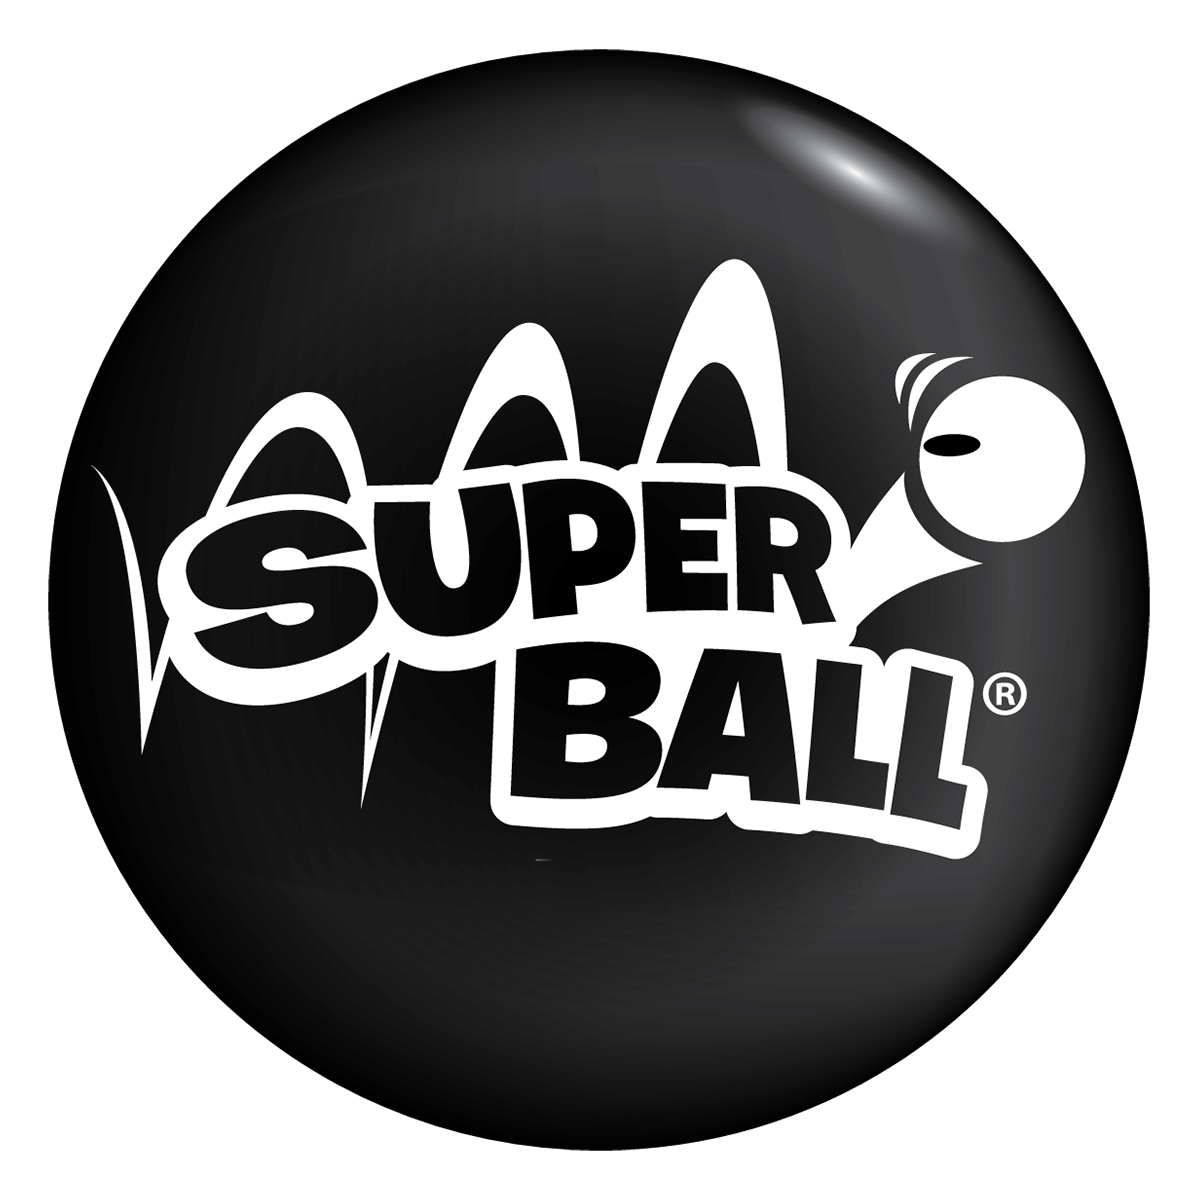 Superballs.io - Online Game 🕹️